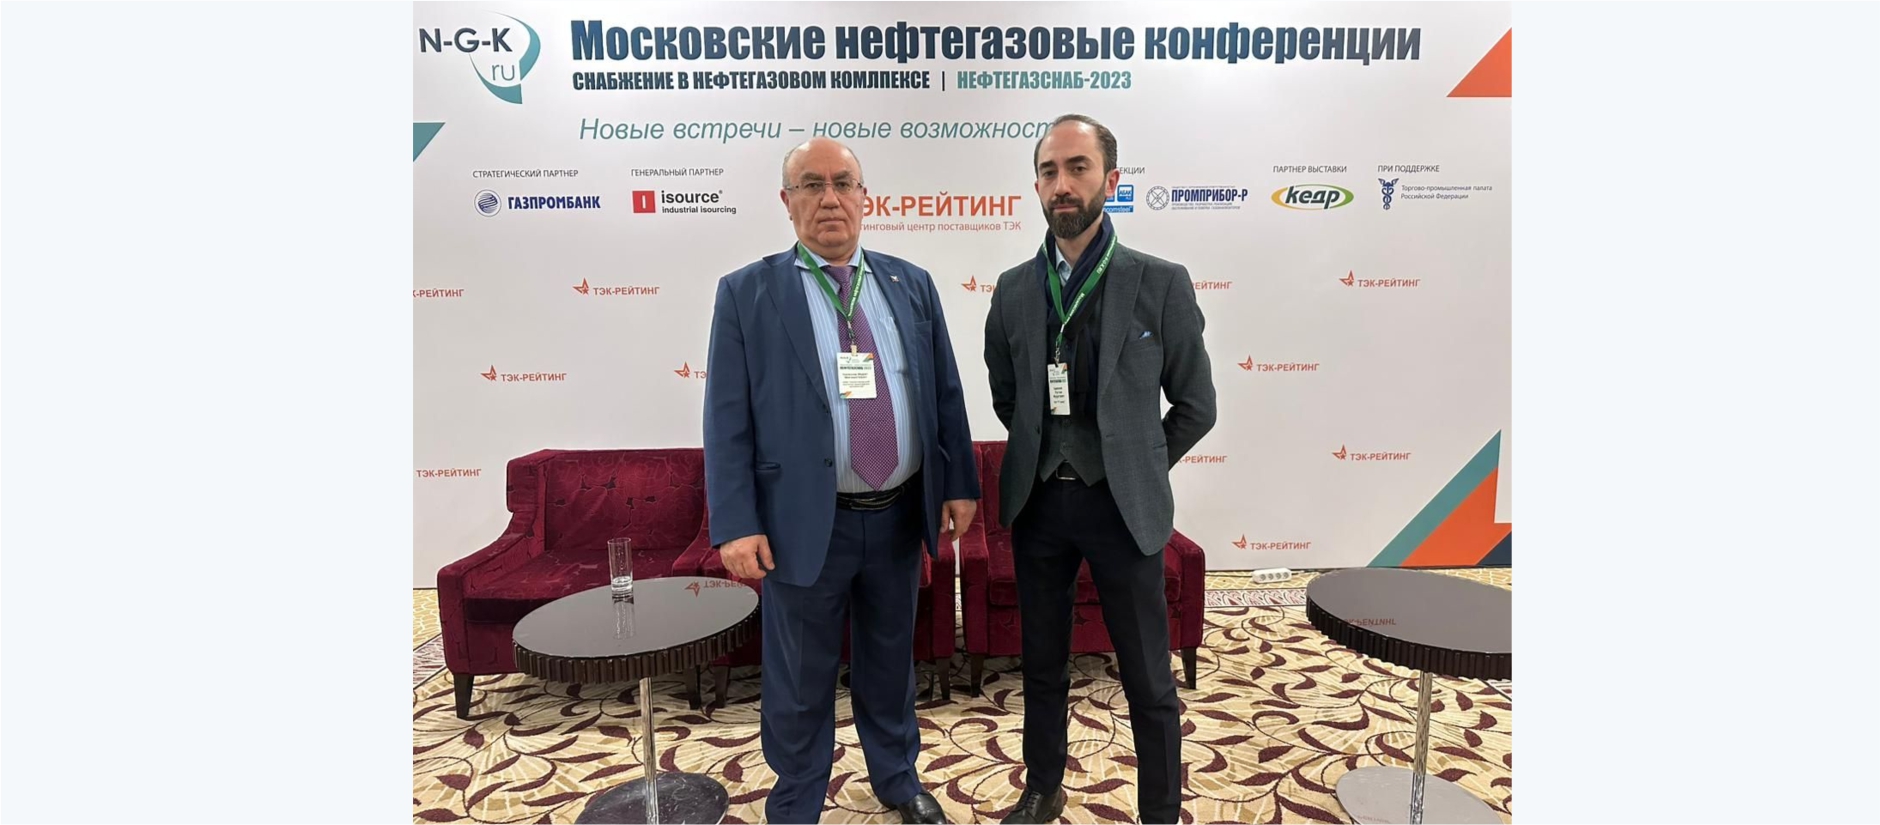 Нижегородский институт прикладных технологий принял участие в XVII ежегодной конференции НЕФТЕГАЗСНАБ-2023